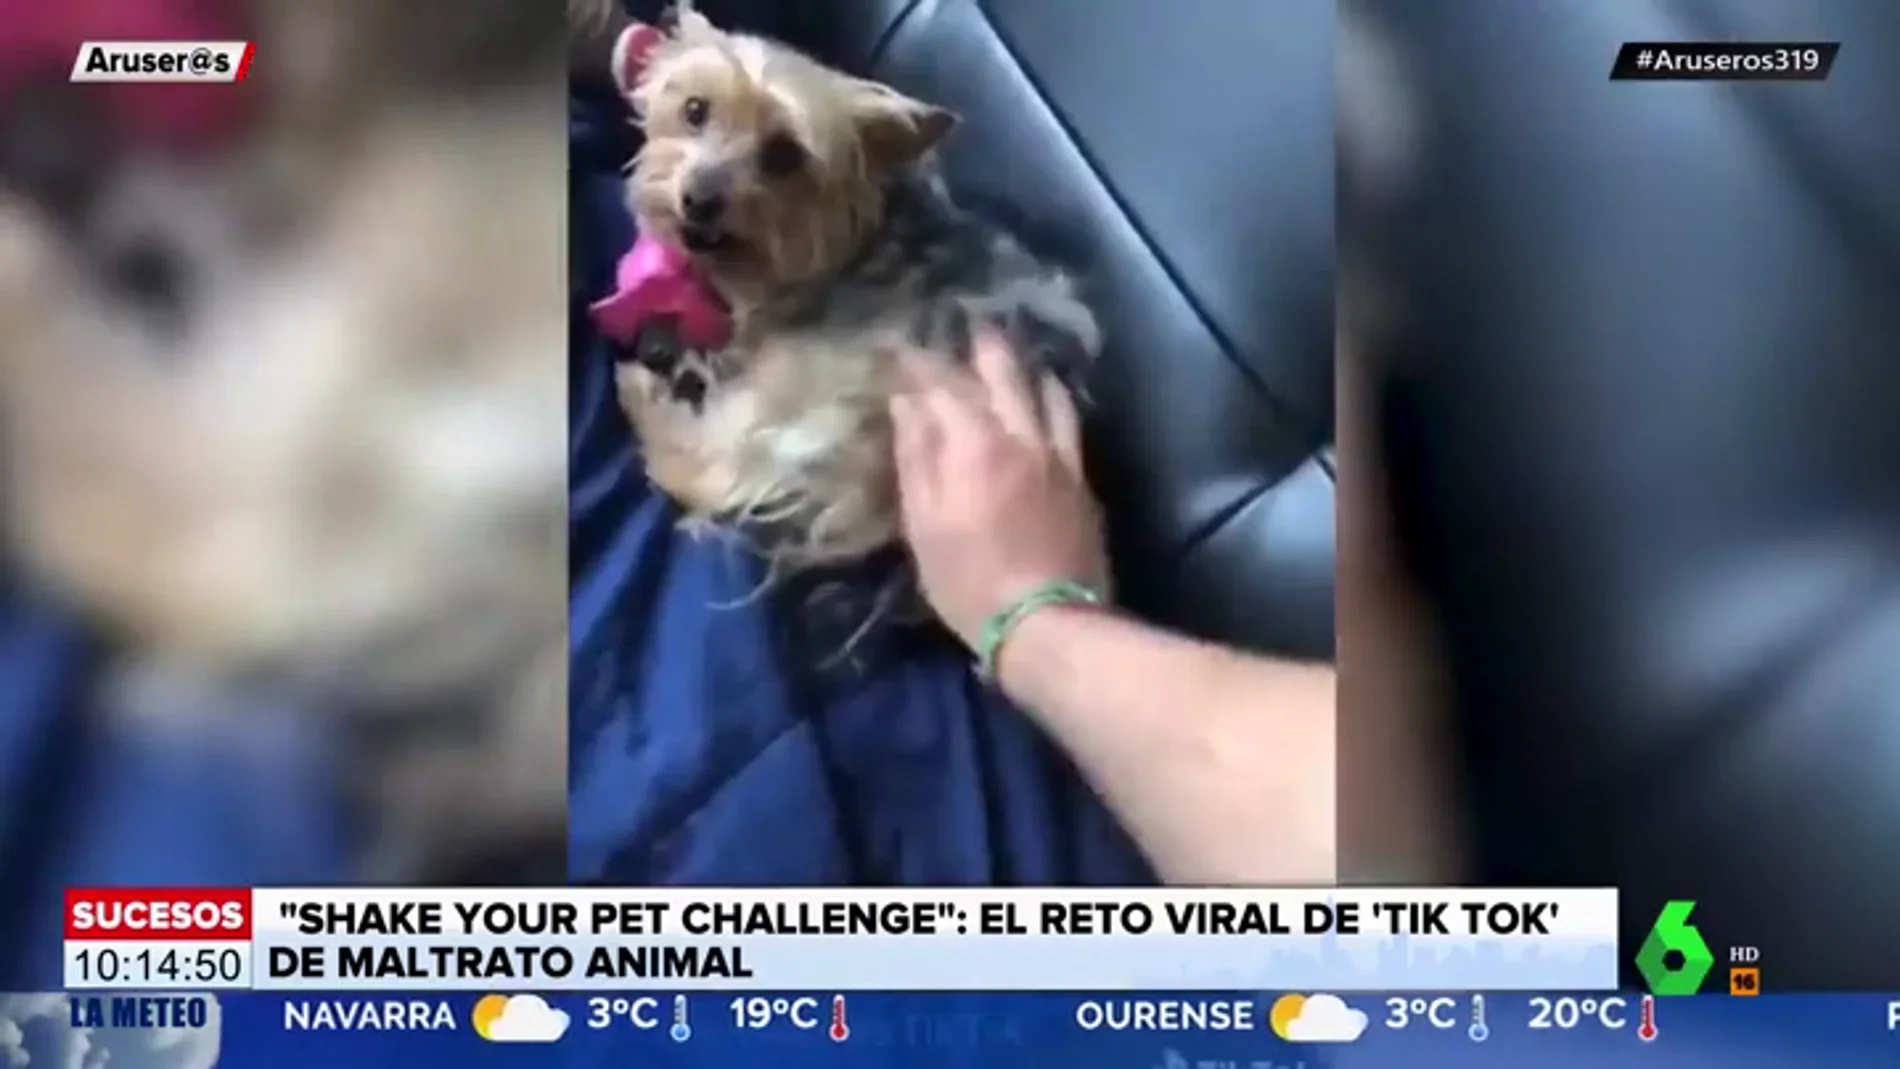 'Shake your pet challenge': el nuevo reto viral de Tik Tok que enciende las alarmas del maltrato animal